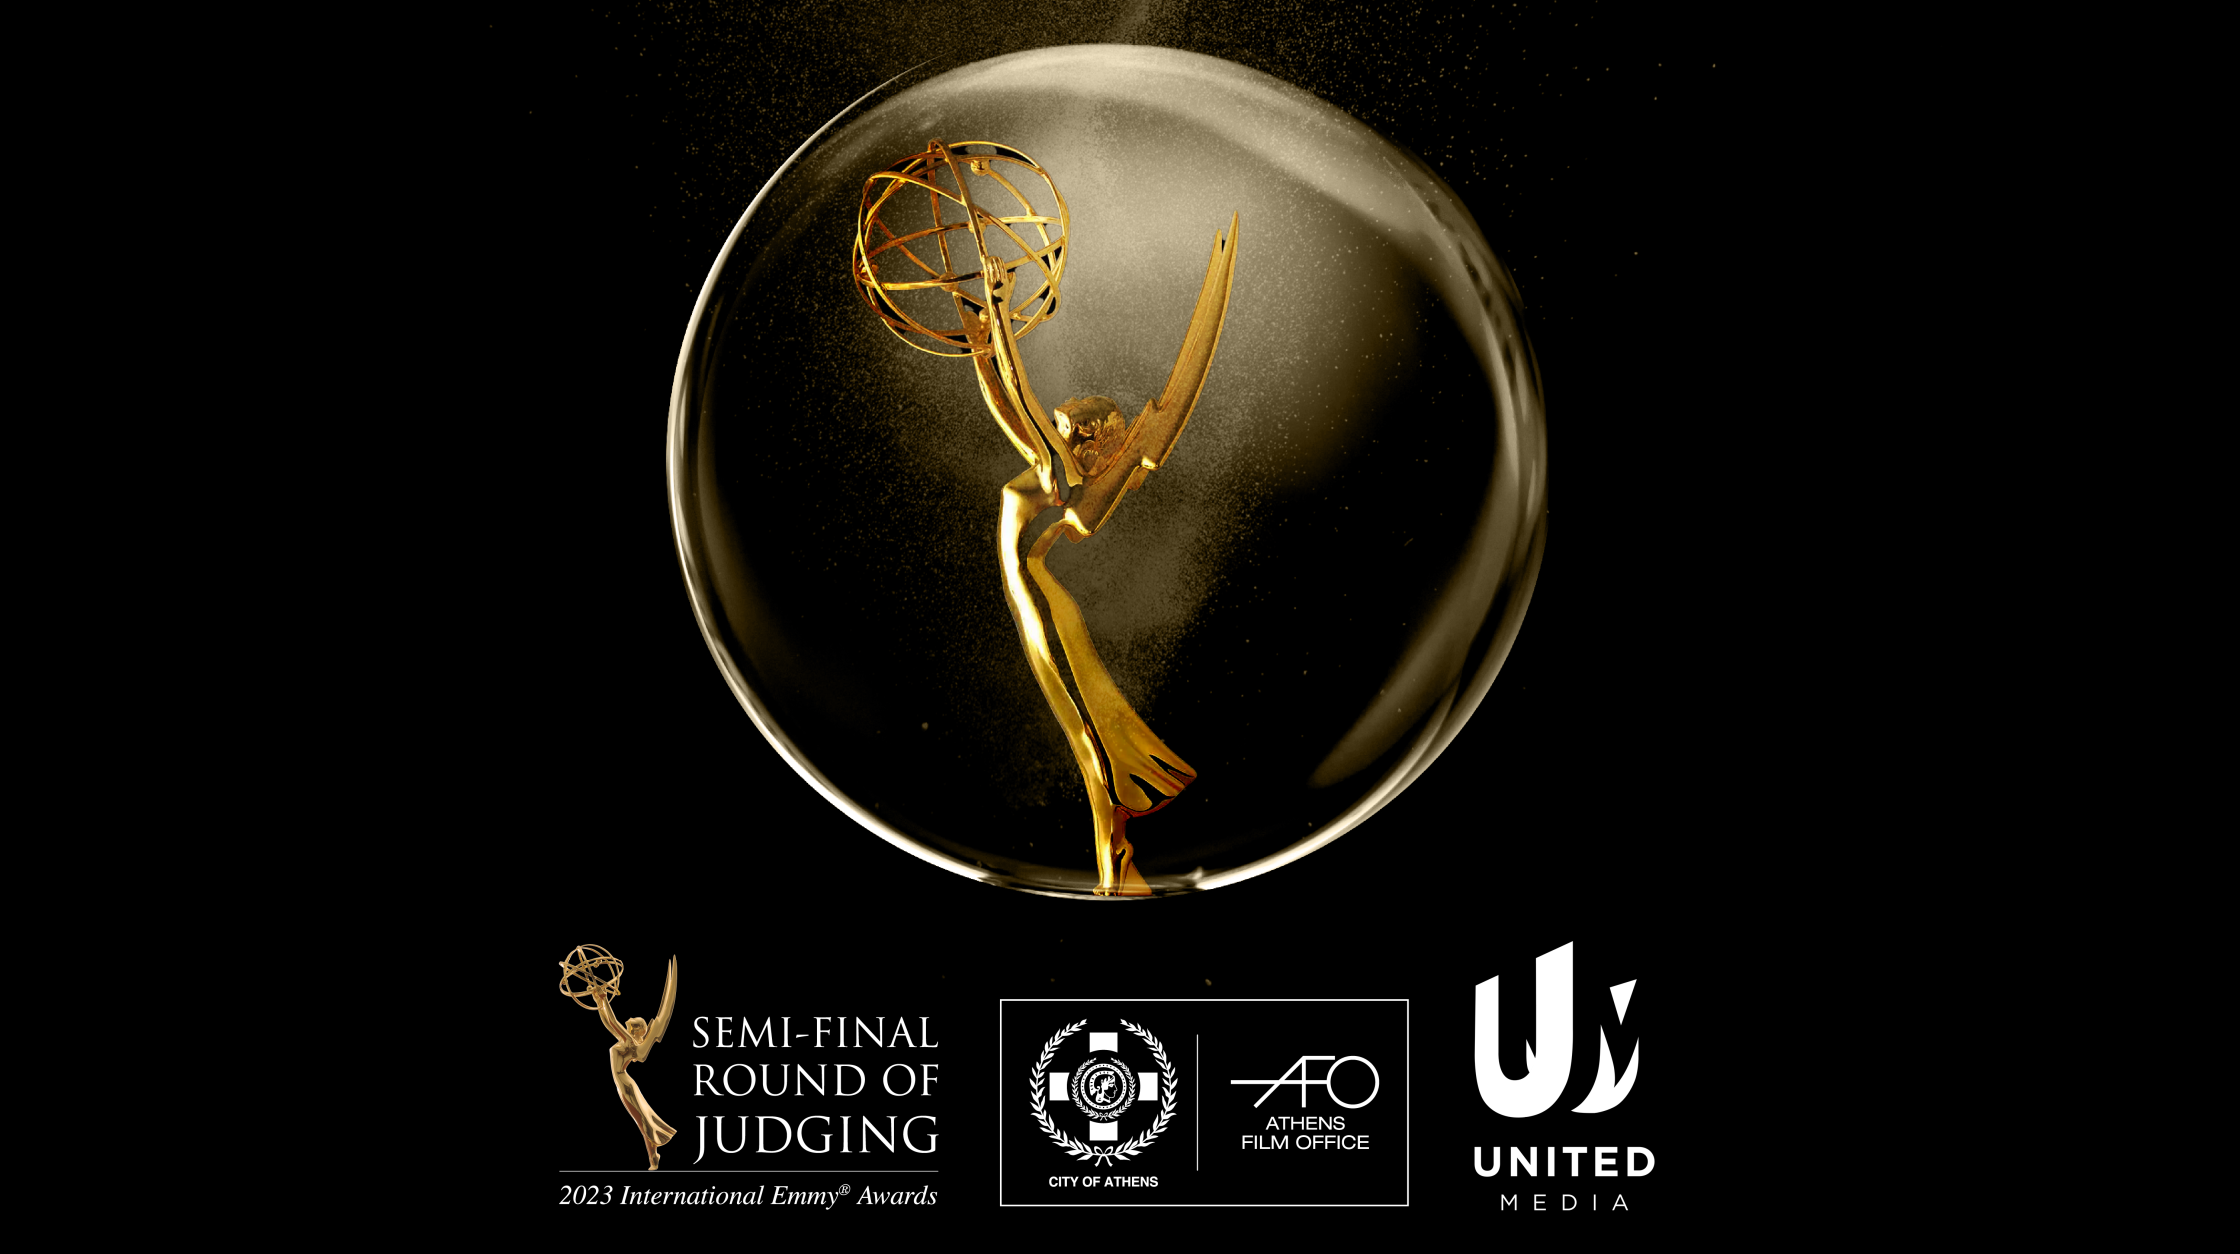 United Media i grad Atina organizuju polufinalno žiriranje za dodelu internacionalnih Emmy nagrada